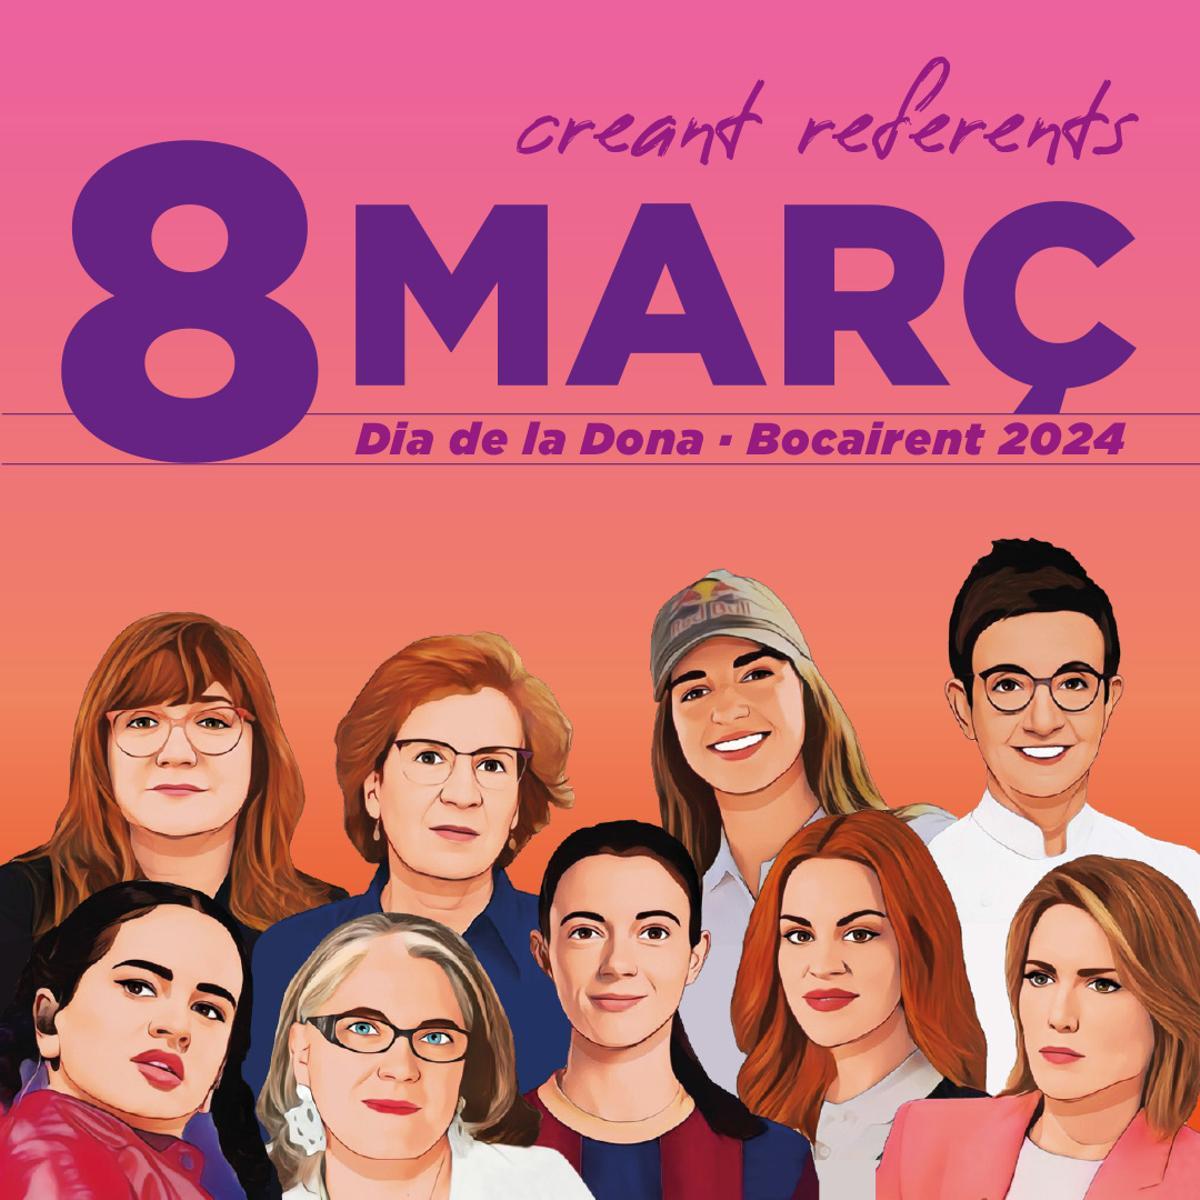 Cartel de «Creando referentes», campaña de Boicarent para el 8M.